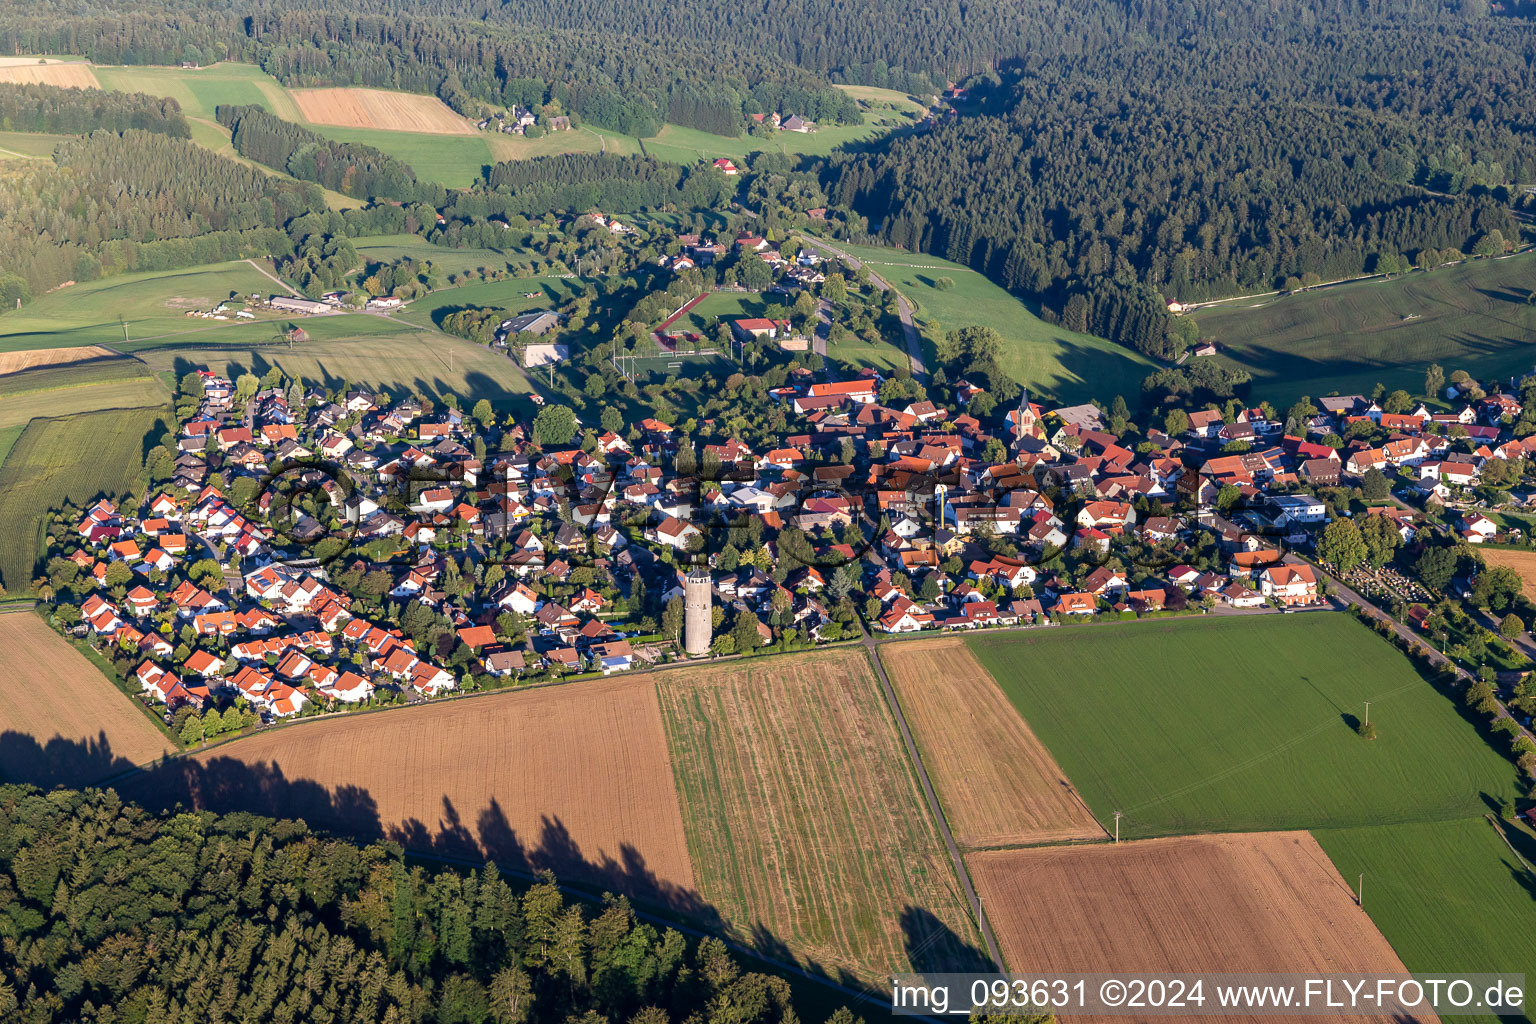 Vue aérienne de Champs agricoles et surfaces utilisables à Kaisersbach dans le département Bade-Wurtemberg, Allemagne